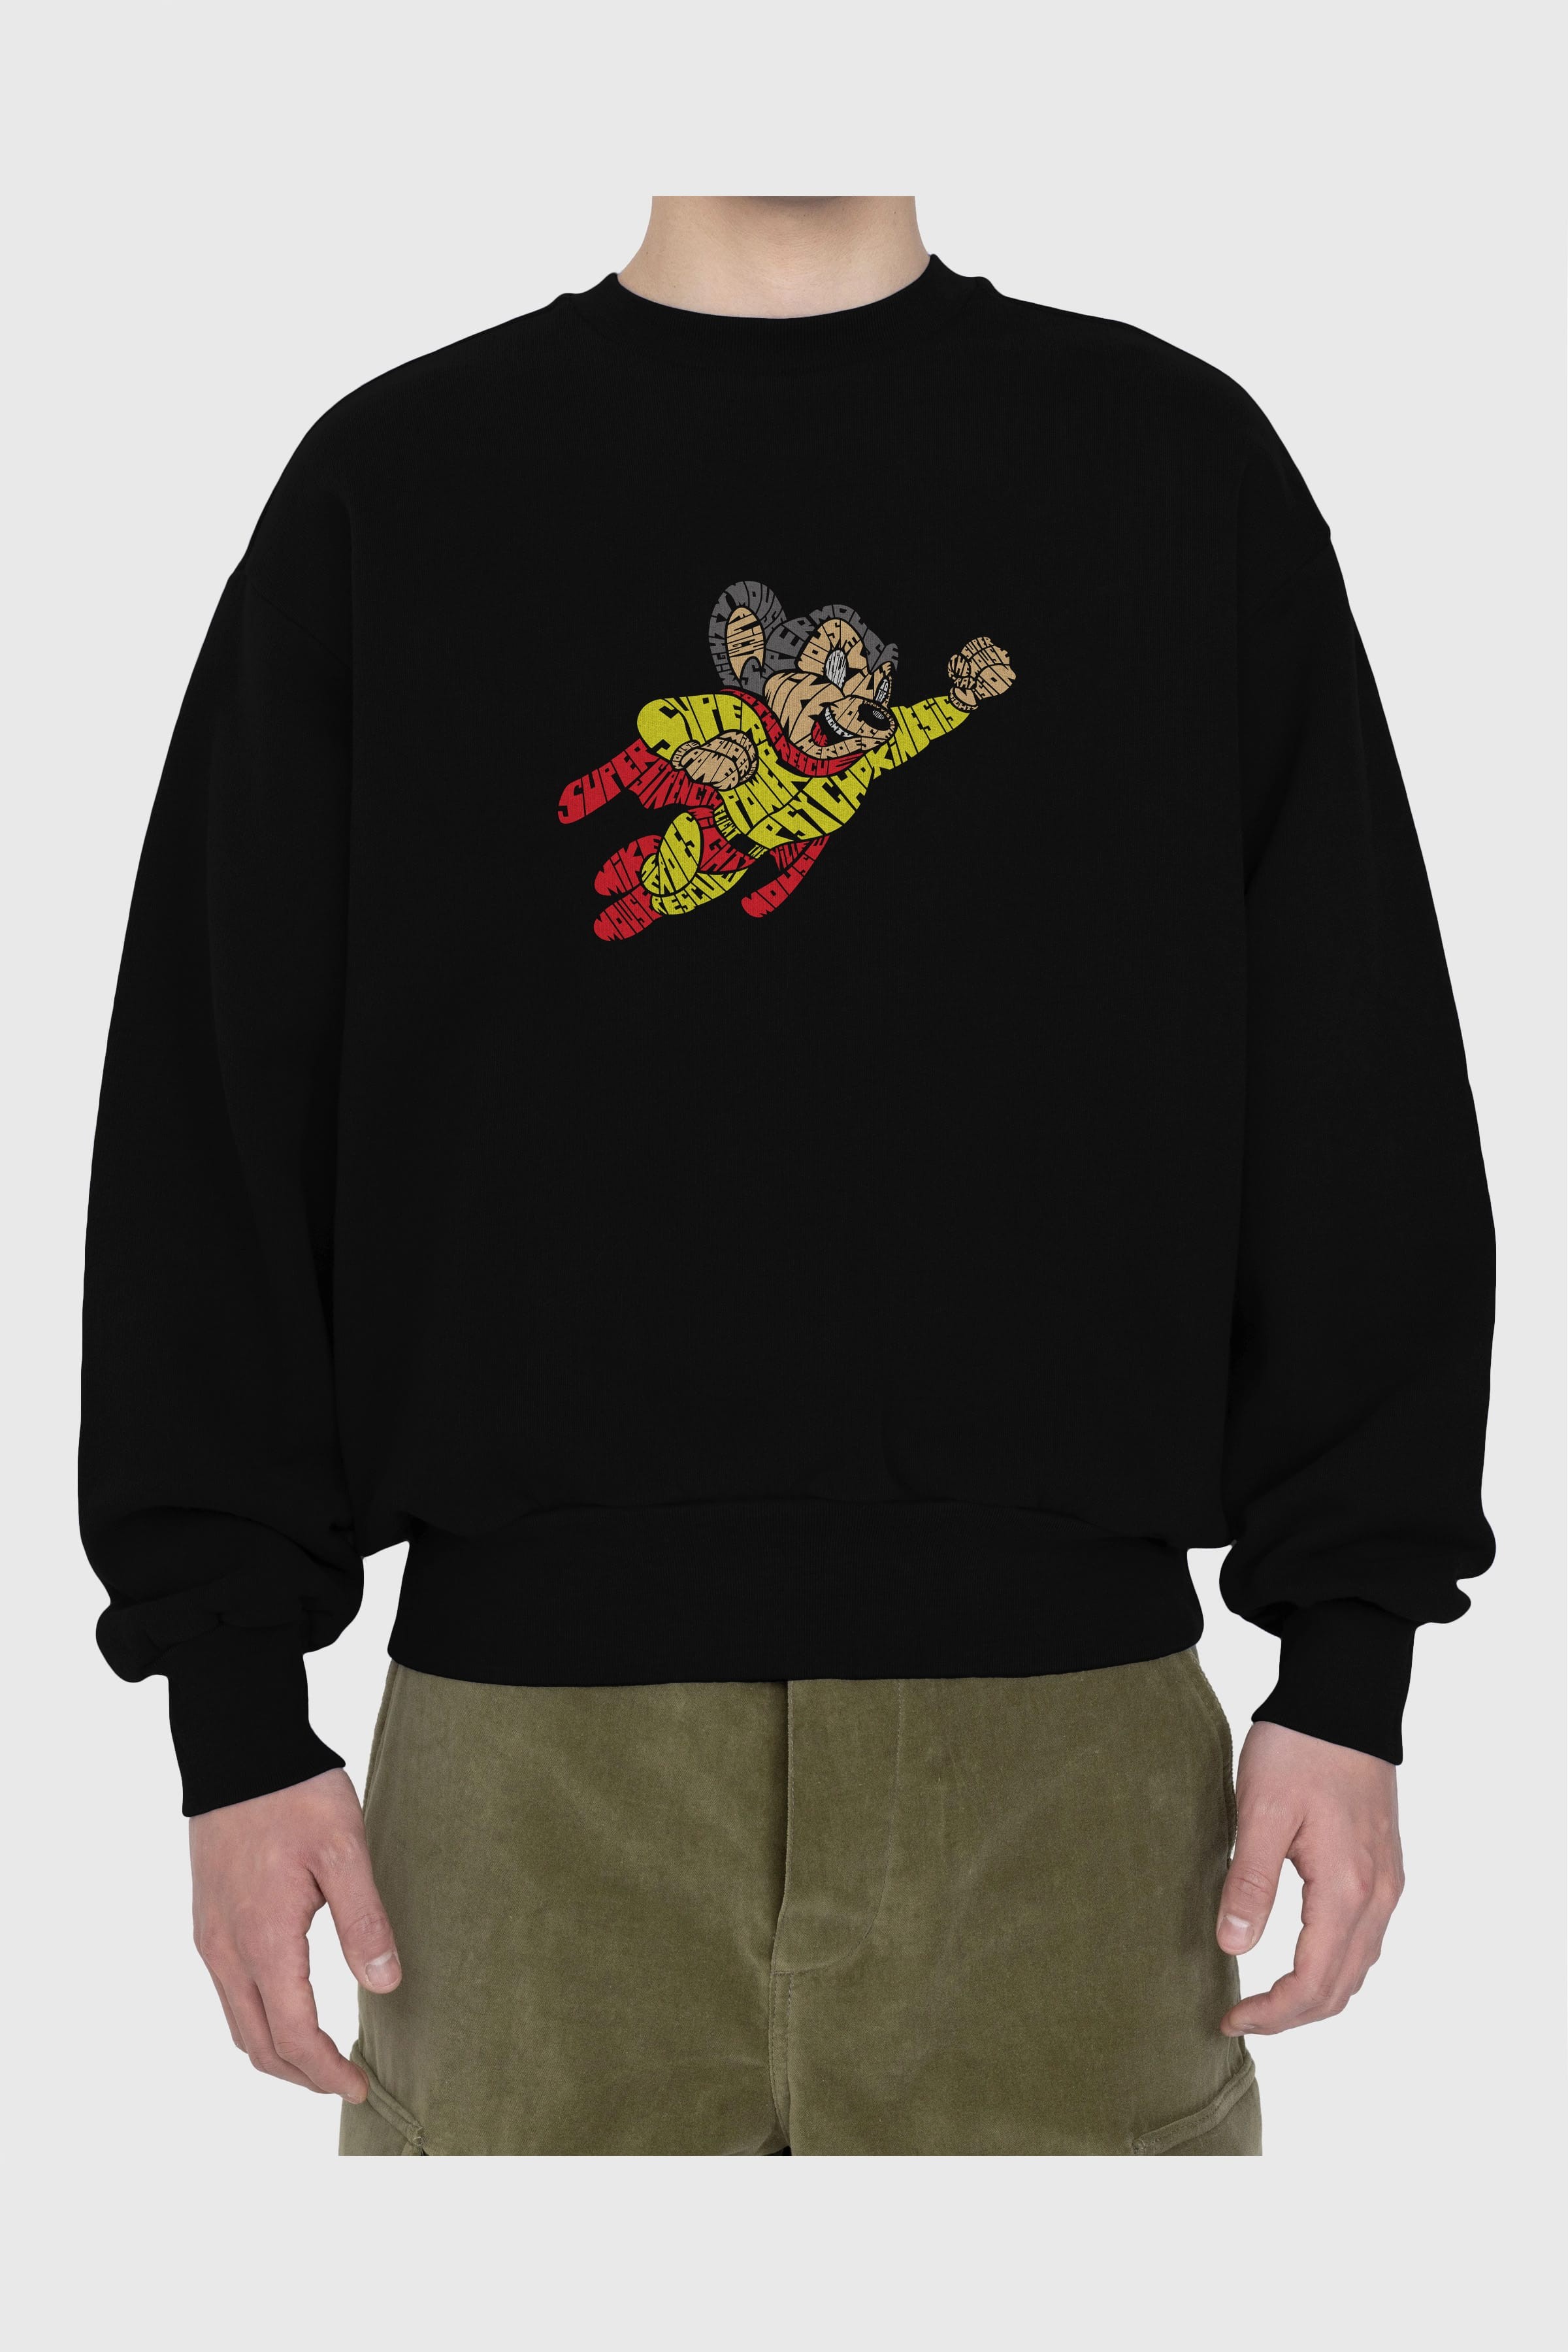 Mighty Mouse Ön Baskılı Oversize Sweatshirt Erkek Kadın Unisex